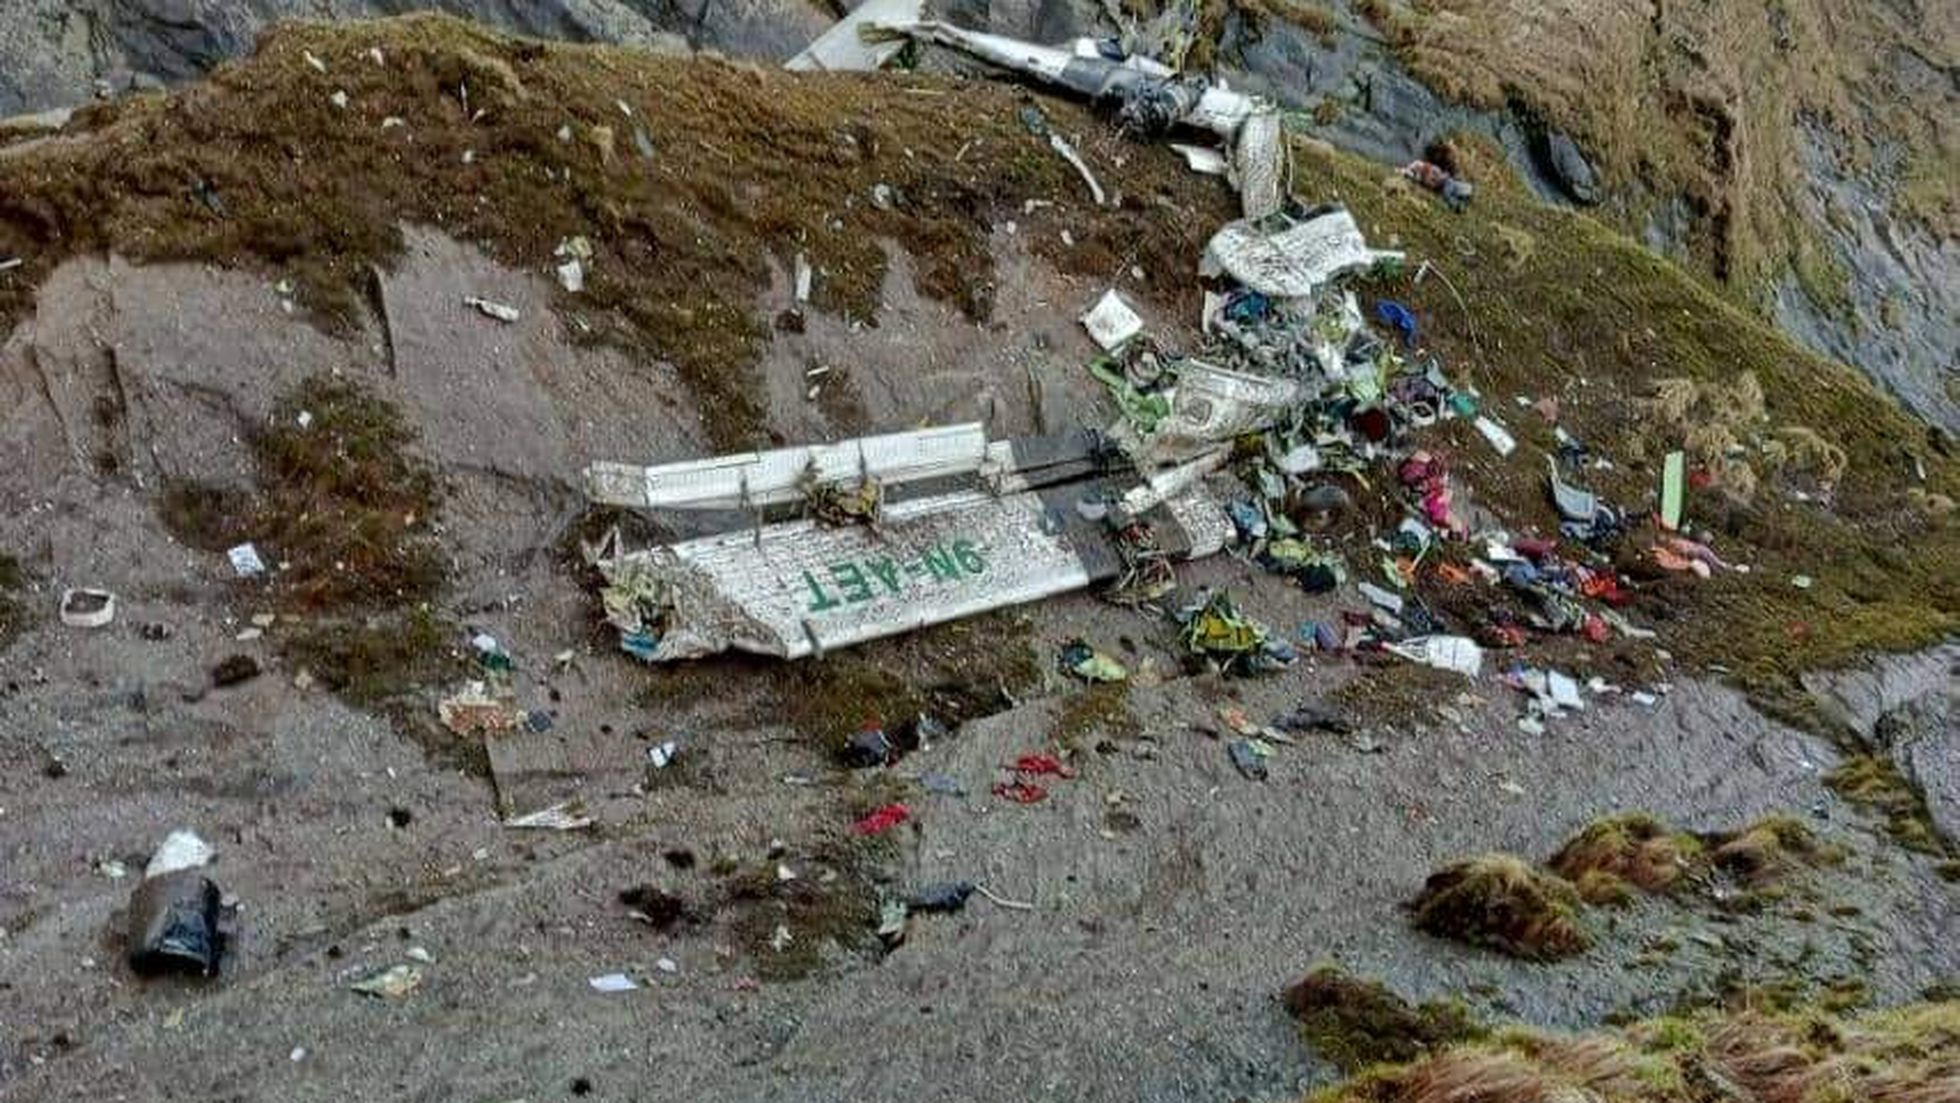  El avión accidentado fue encontrado tras más de 20 horas de búsqueda en el distrito de Mustang, en el noroeste de Nepal. Foto captura video.